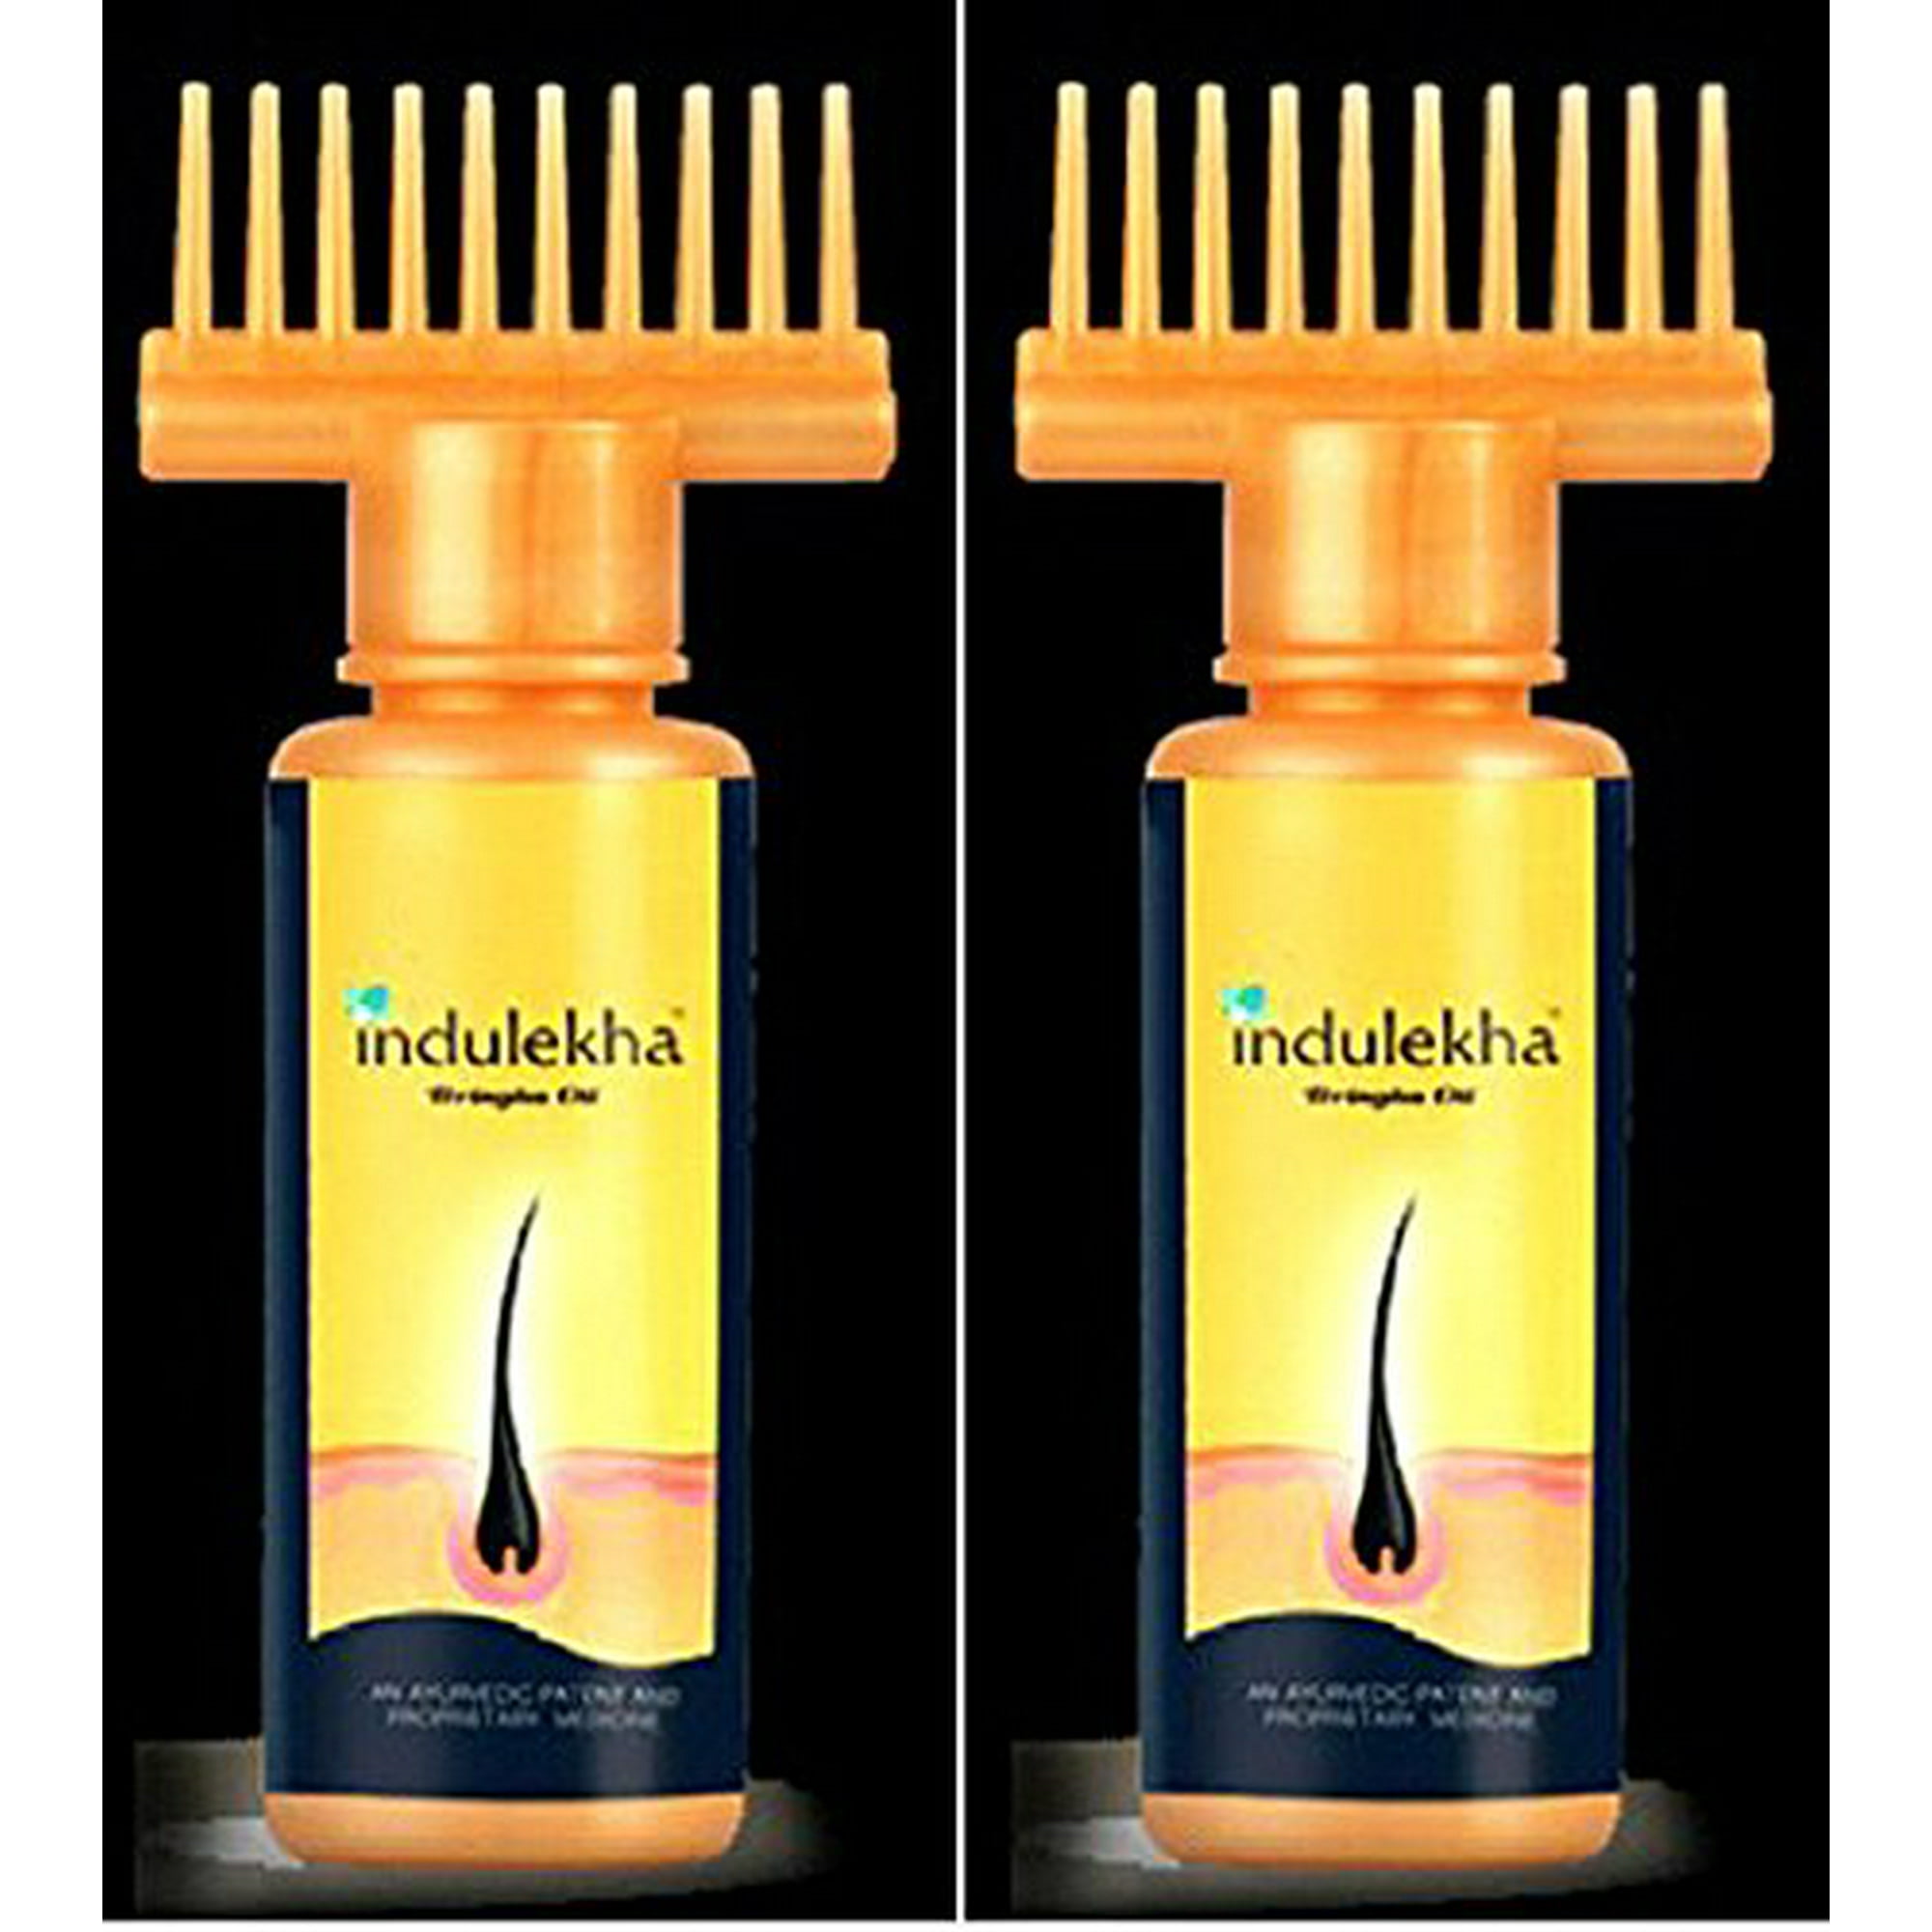 2 Indulekha Bringha Hair Care Oil Prevents Hair Loss 100 Ml X 2 = 200 Ml |  Walmart Canada